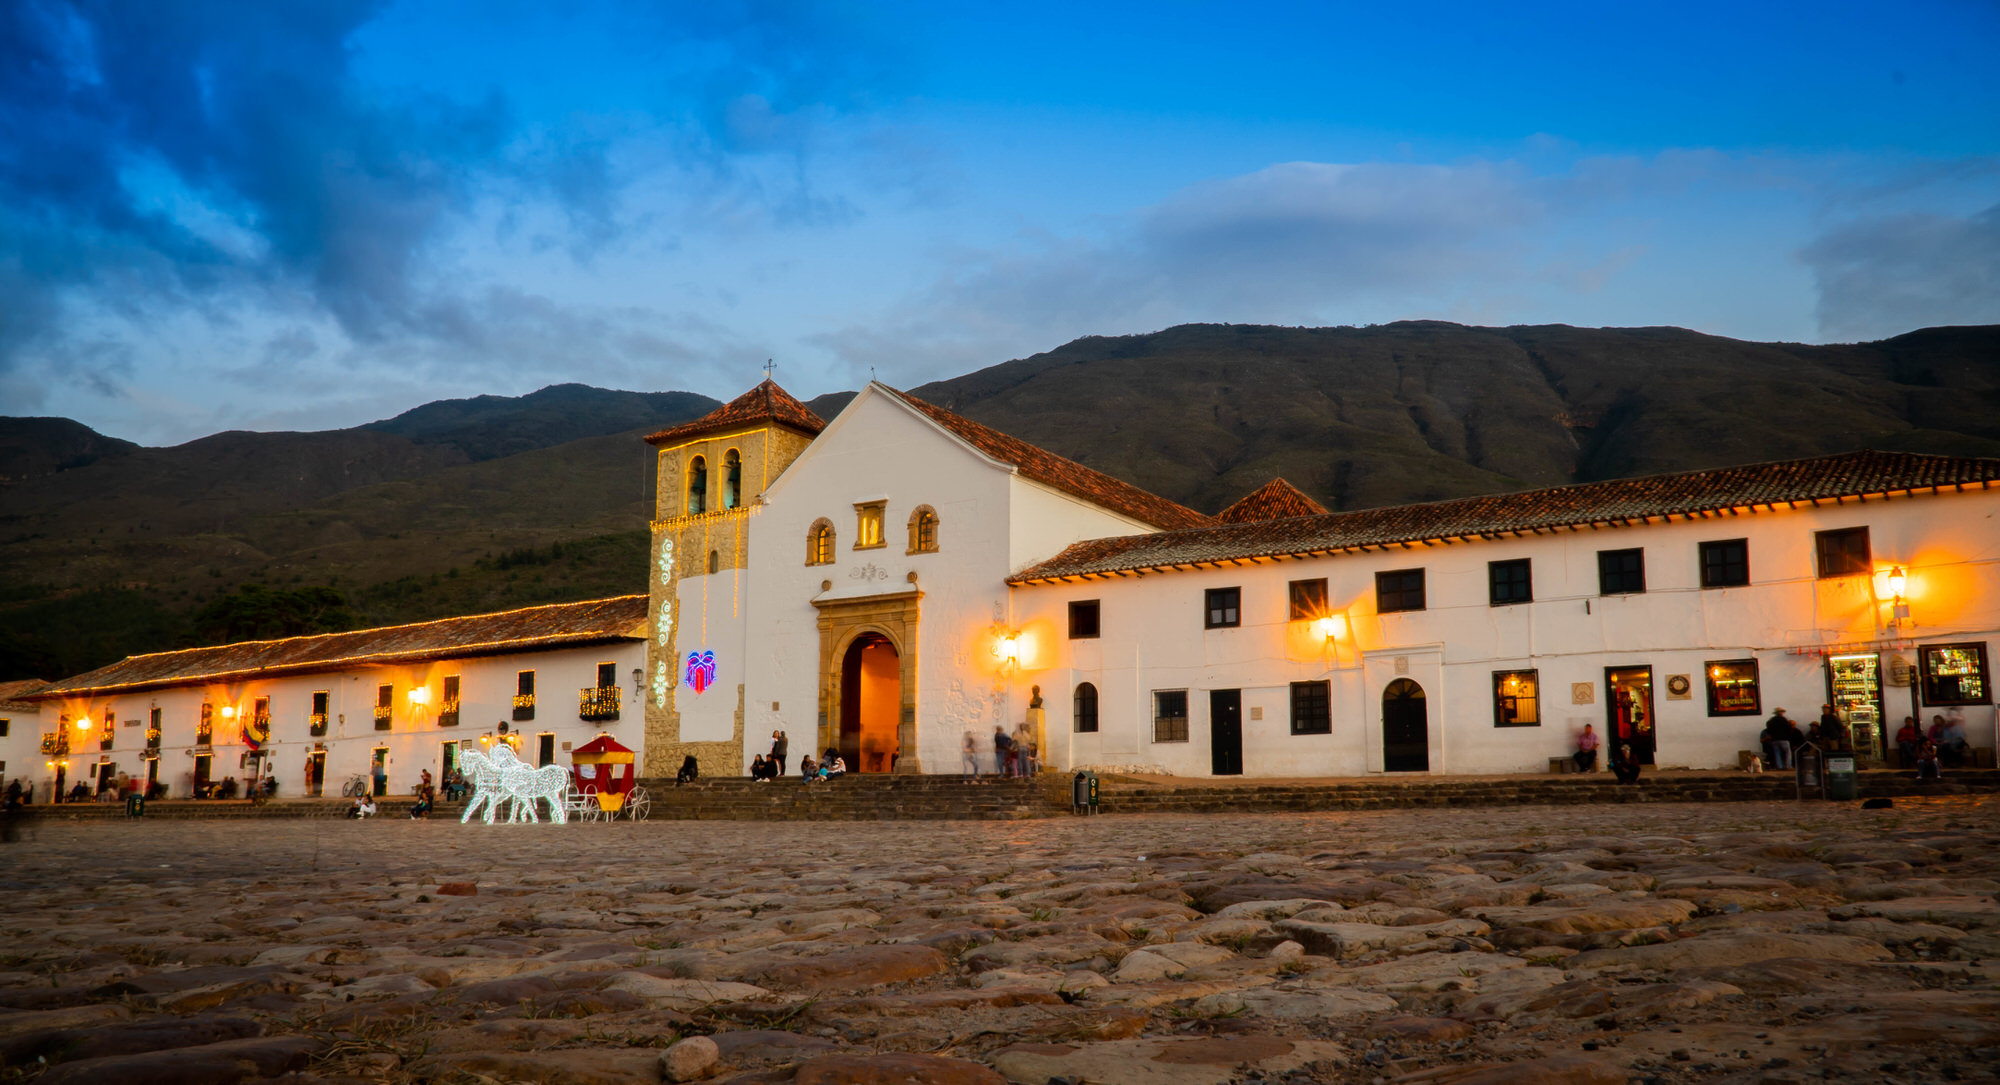 Villa de Leyva, patrimonio histórico y turístico de Colombia